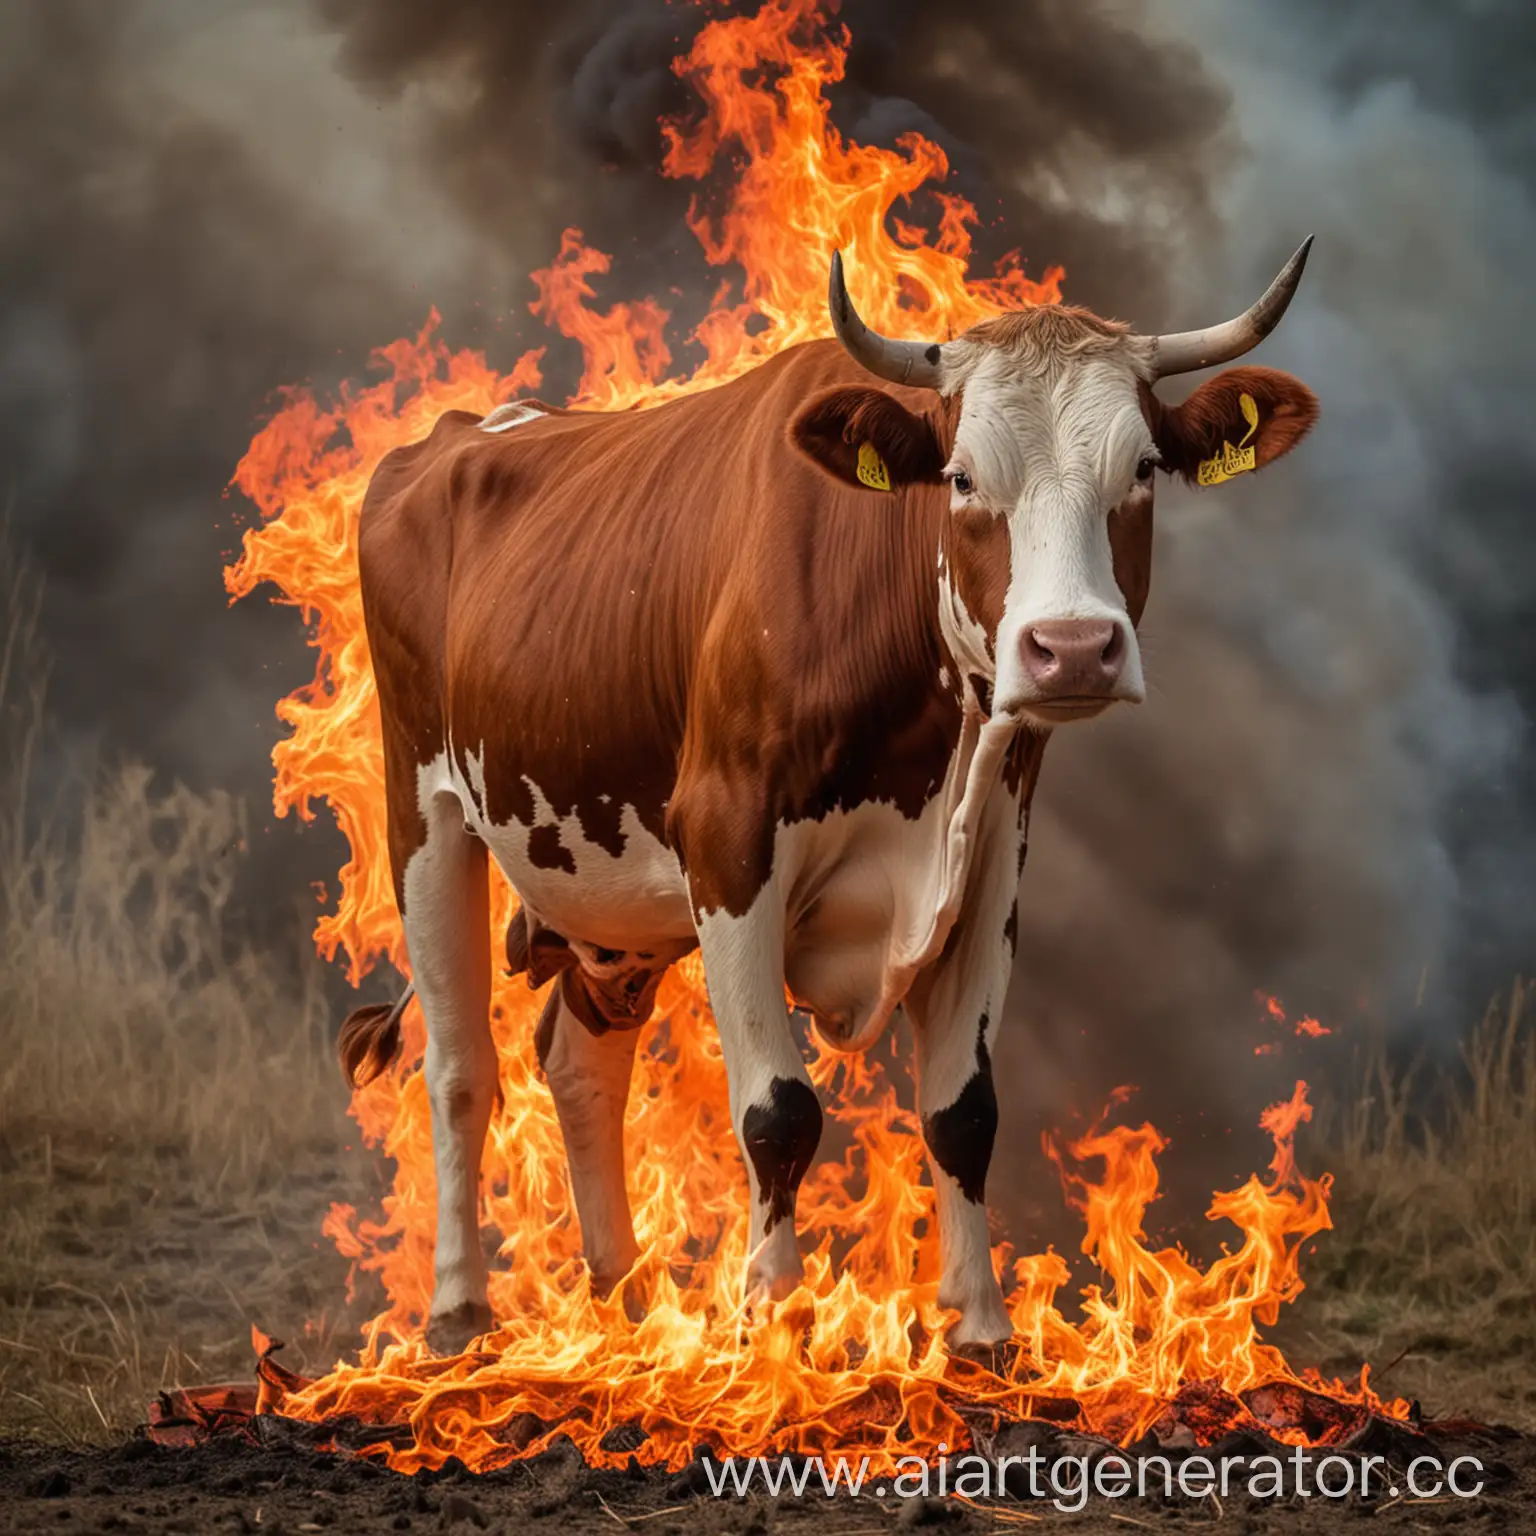 Burning-Cow-in-Fiery-Landscape